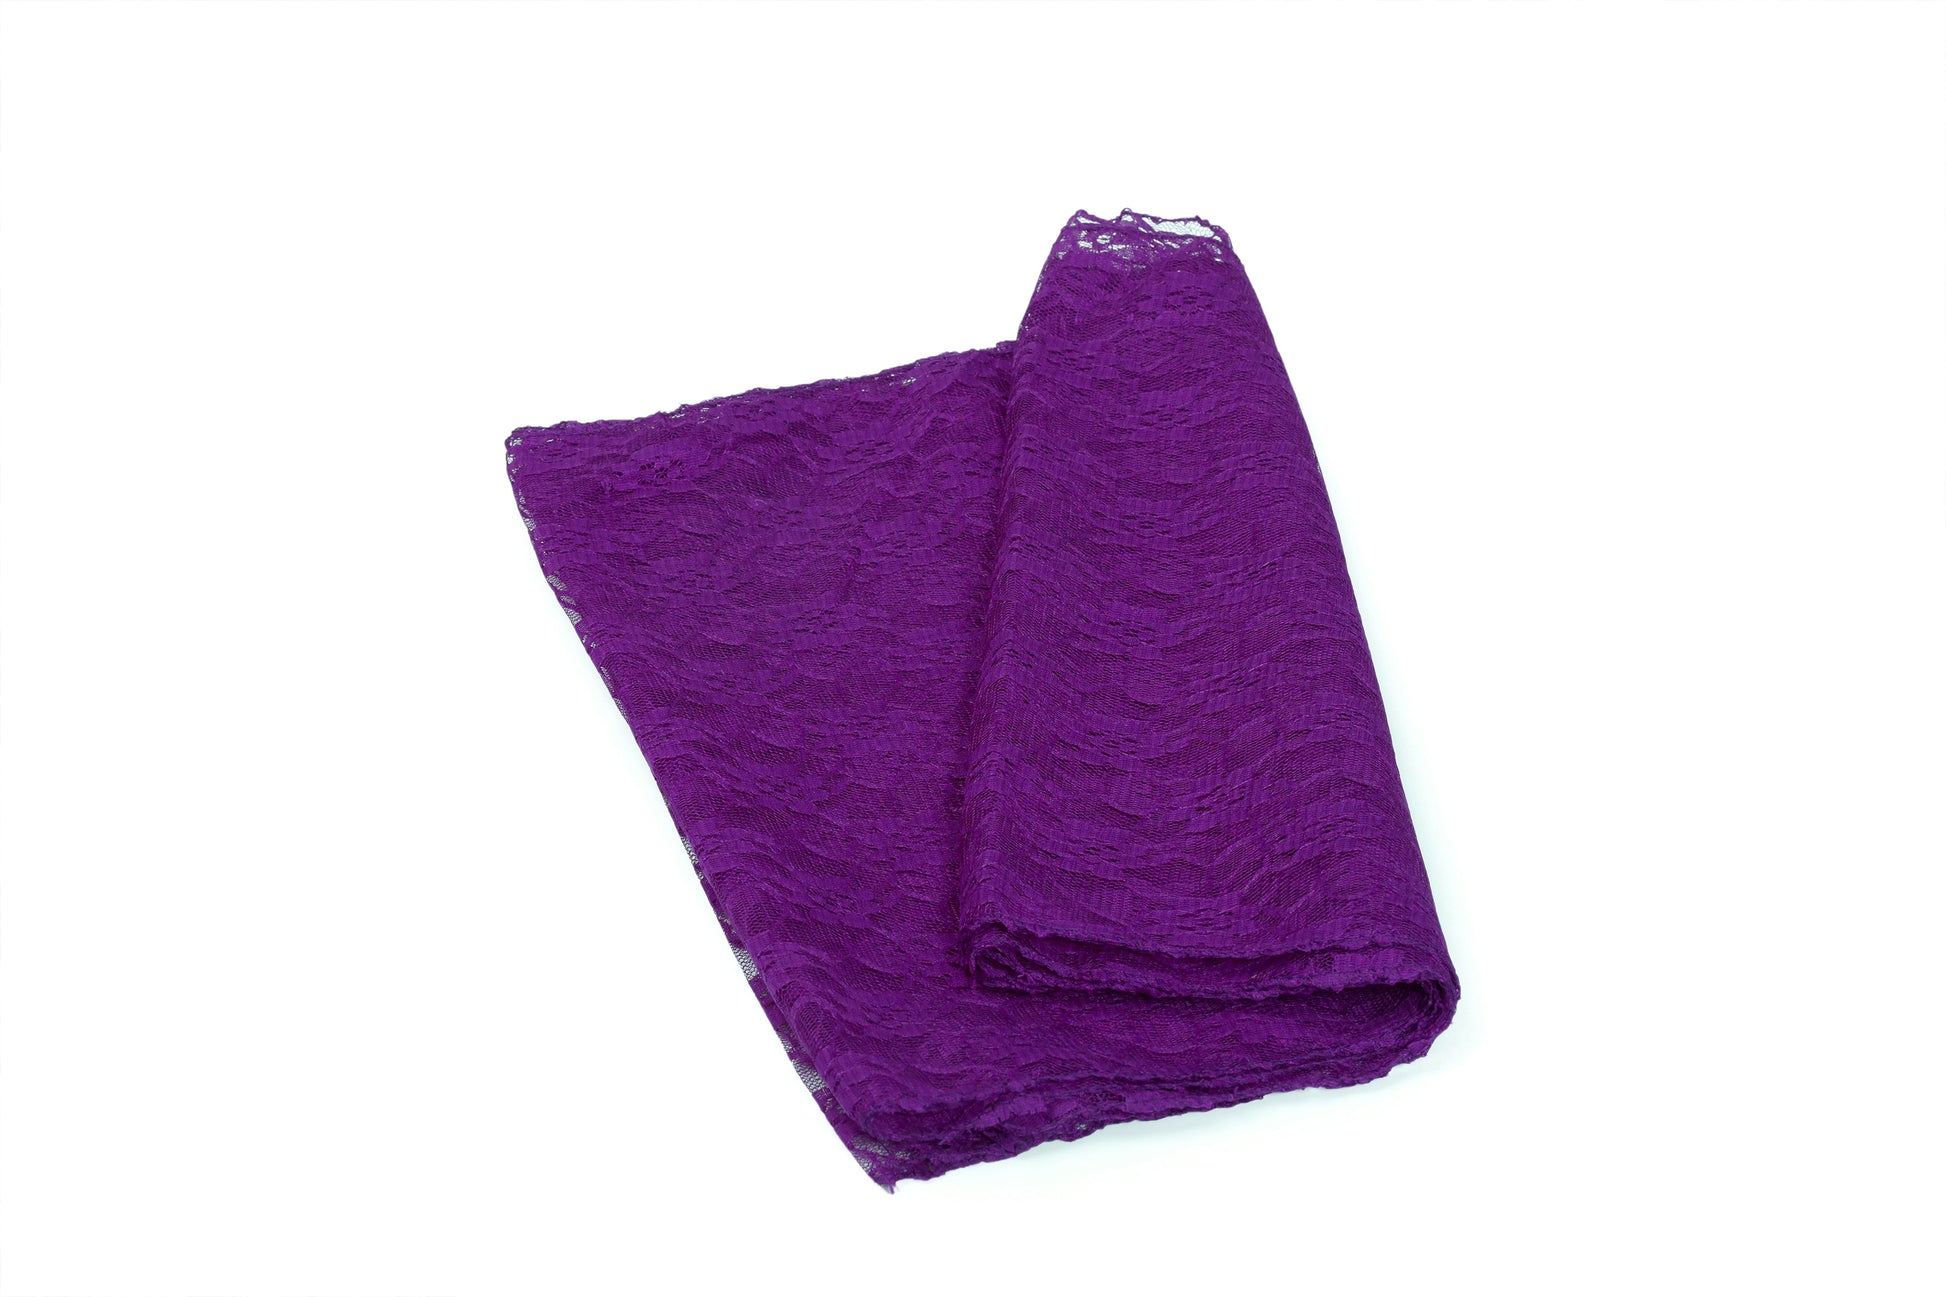 Cadbury Purple,ea943d10-8abe-4636-acd9-0a4ecc60fb03